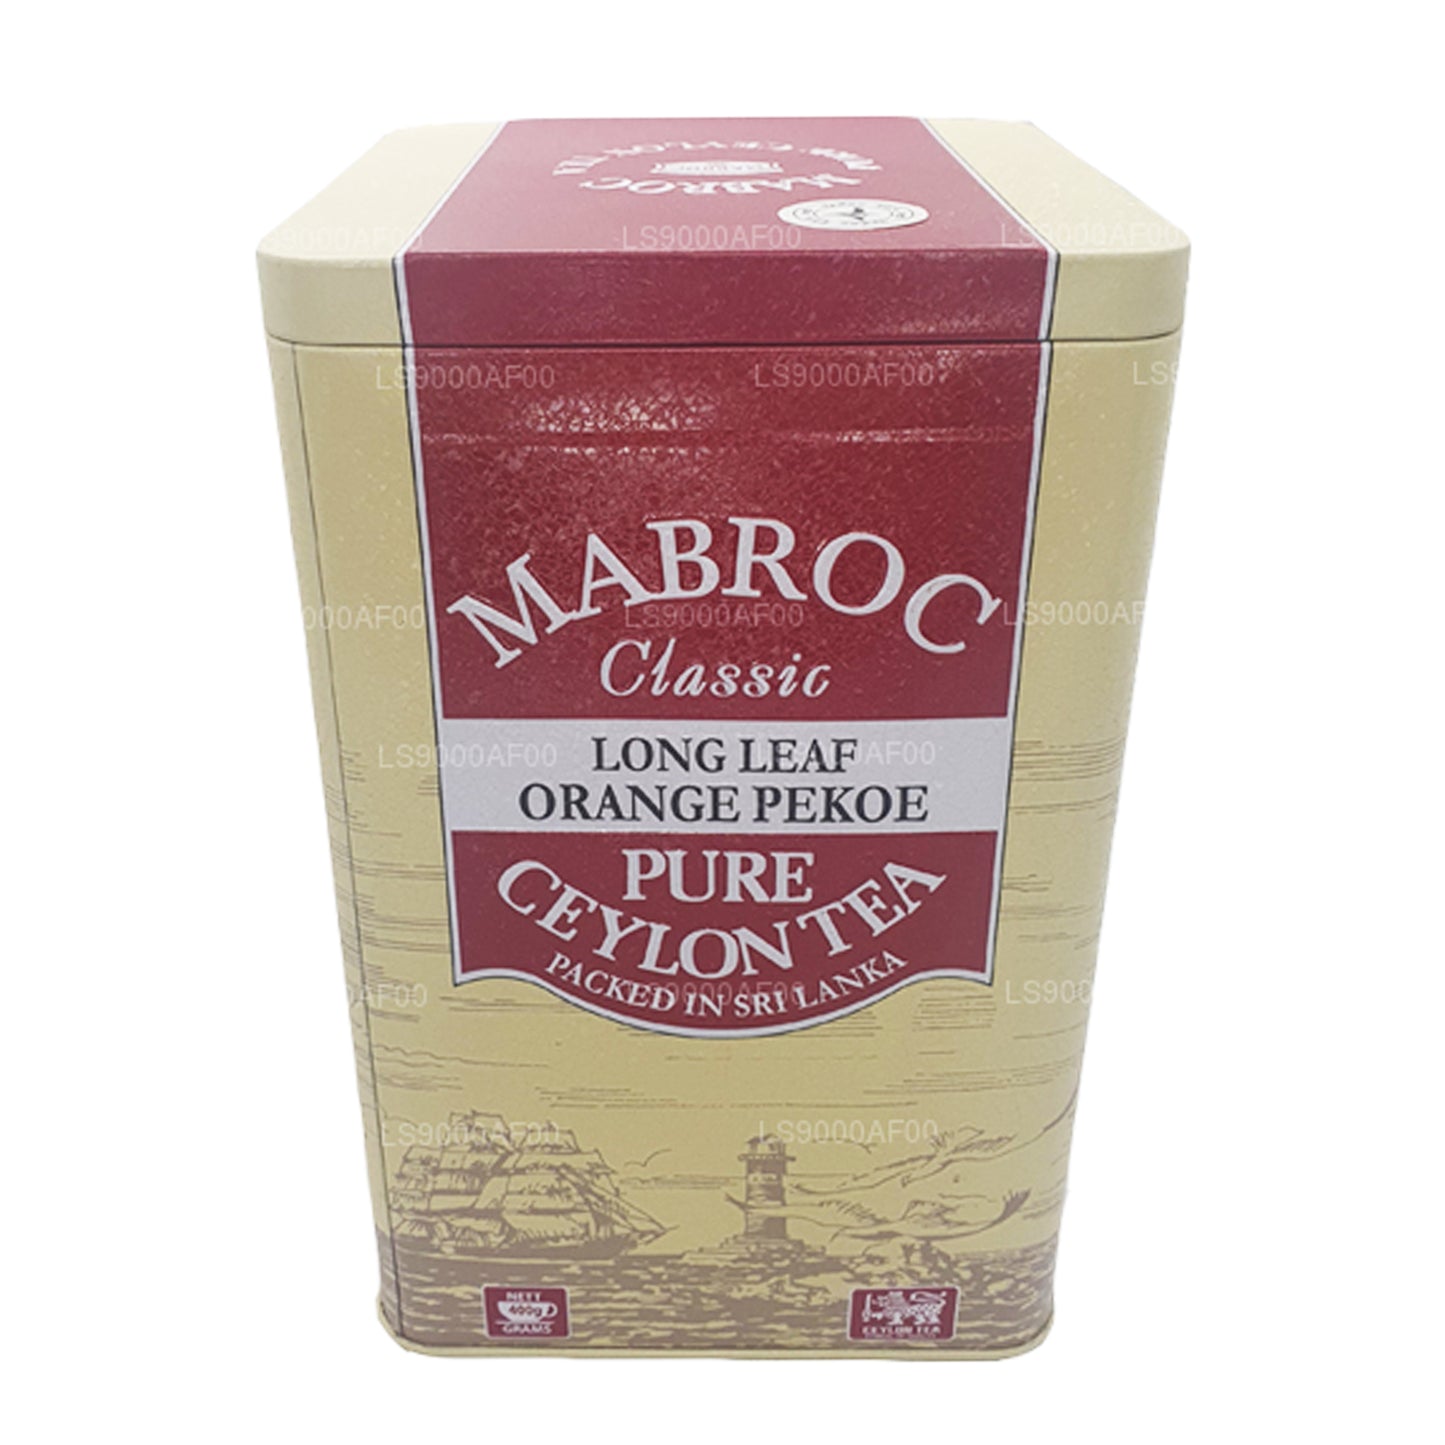 Mabroc Классический длиннолистовой апельсиновый чай Peoke (400 г)